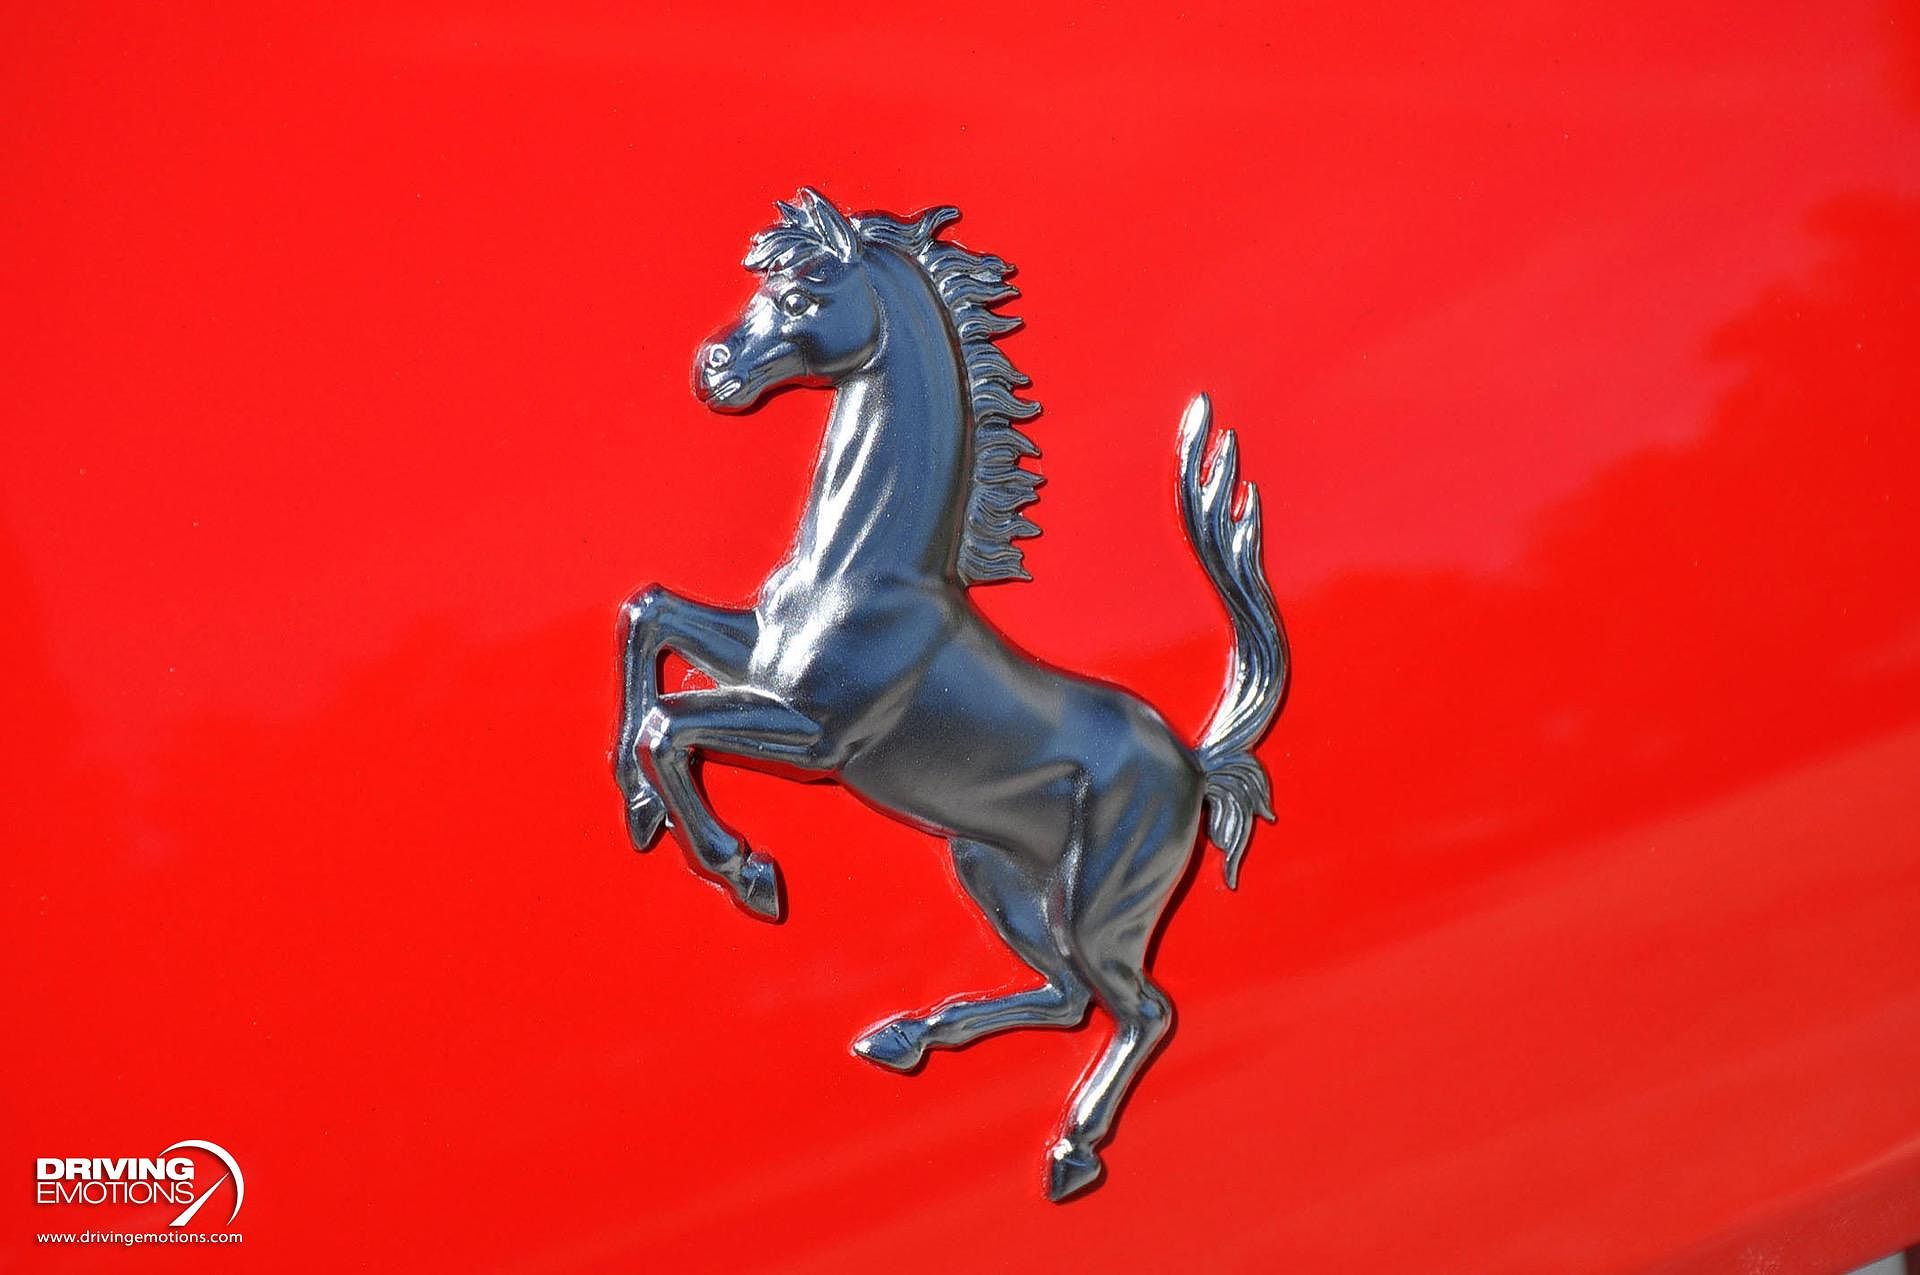 2008 Ferrari 599 GTB Fiorano image 30